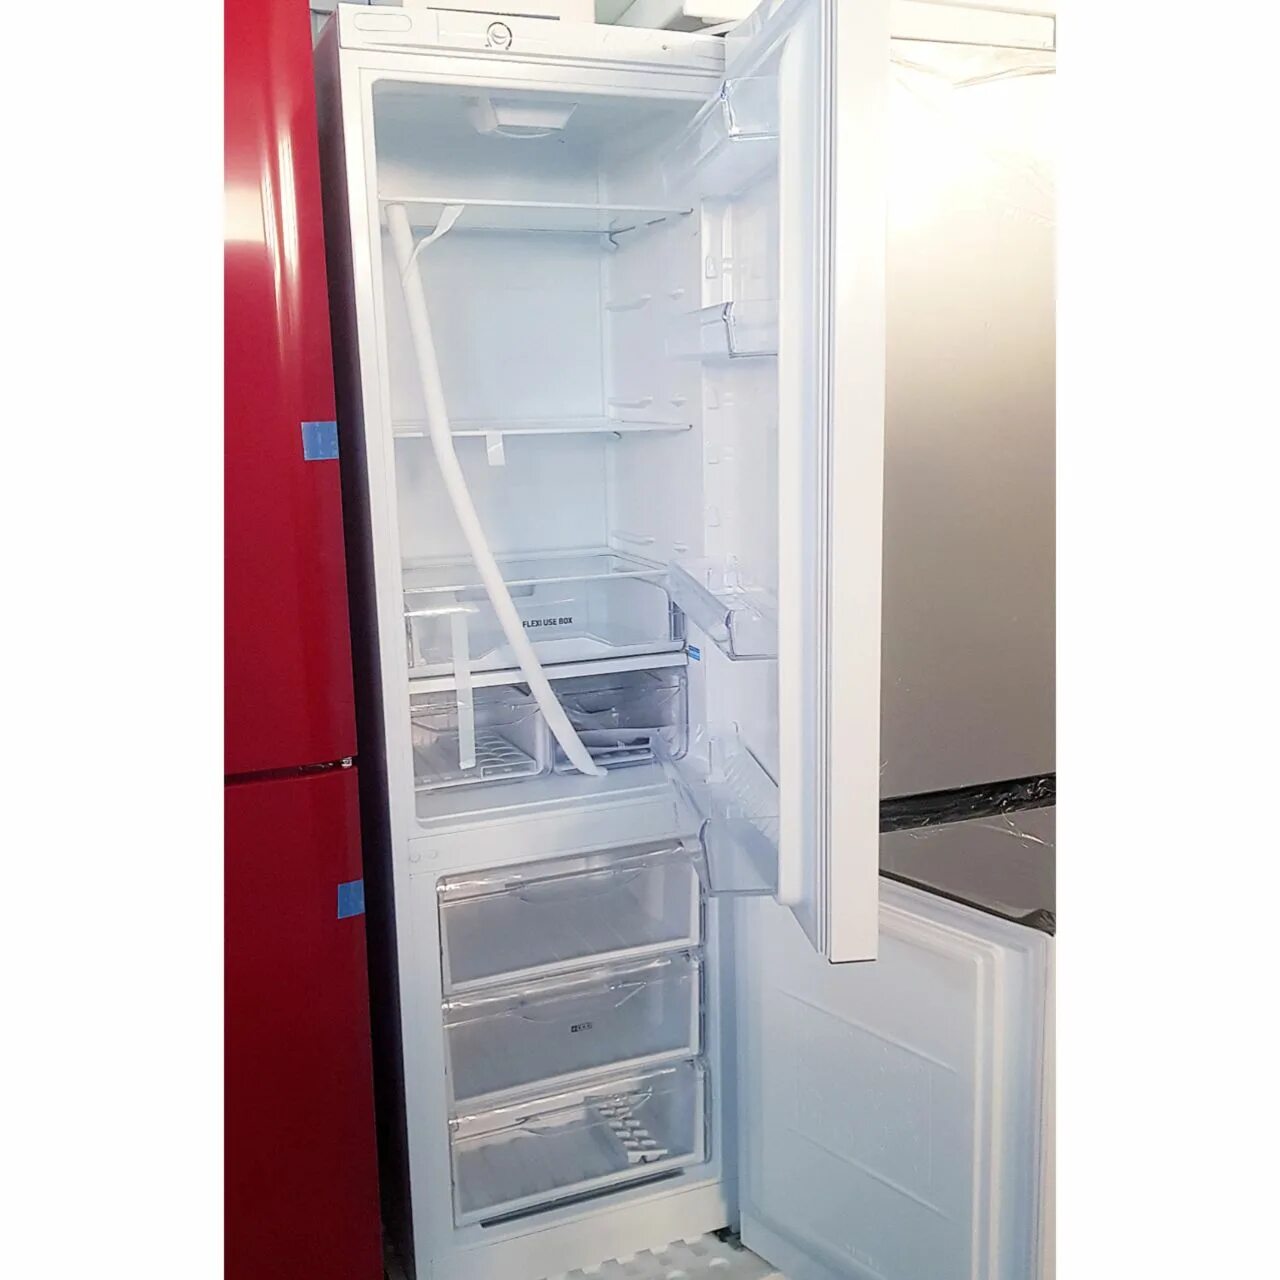 Индезит холодильник Baan 10 год выпуска 2010. Модели холодильников Индезит двухкамерный 2006 года. Холодильник Индезит двухкамерный внешний вид. Холодильник индезит двухкамерный модели